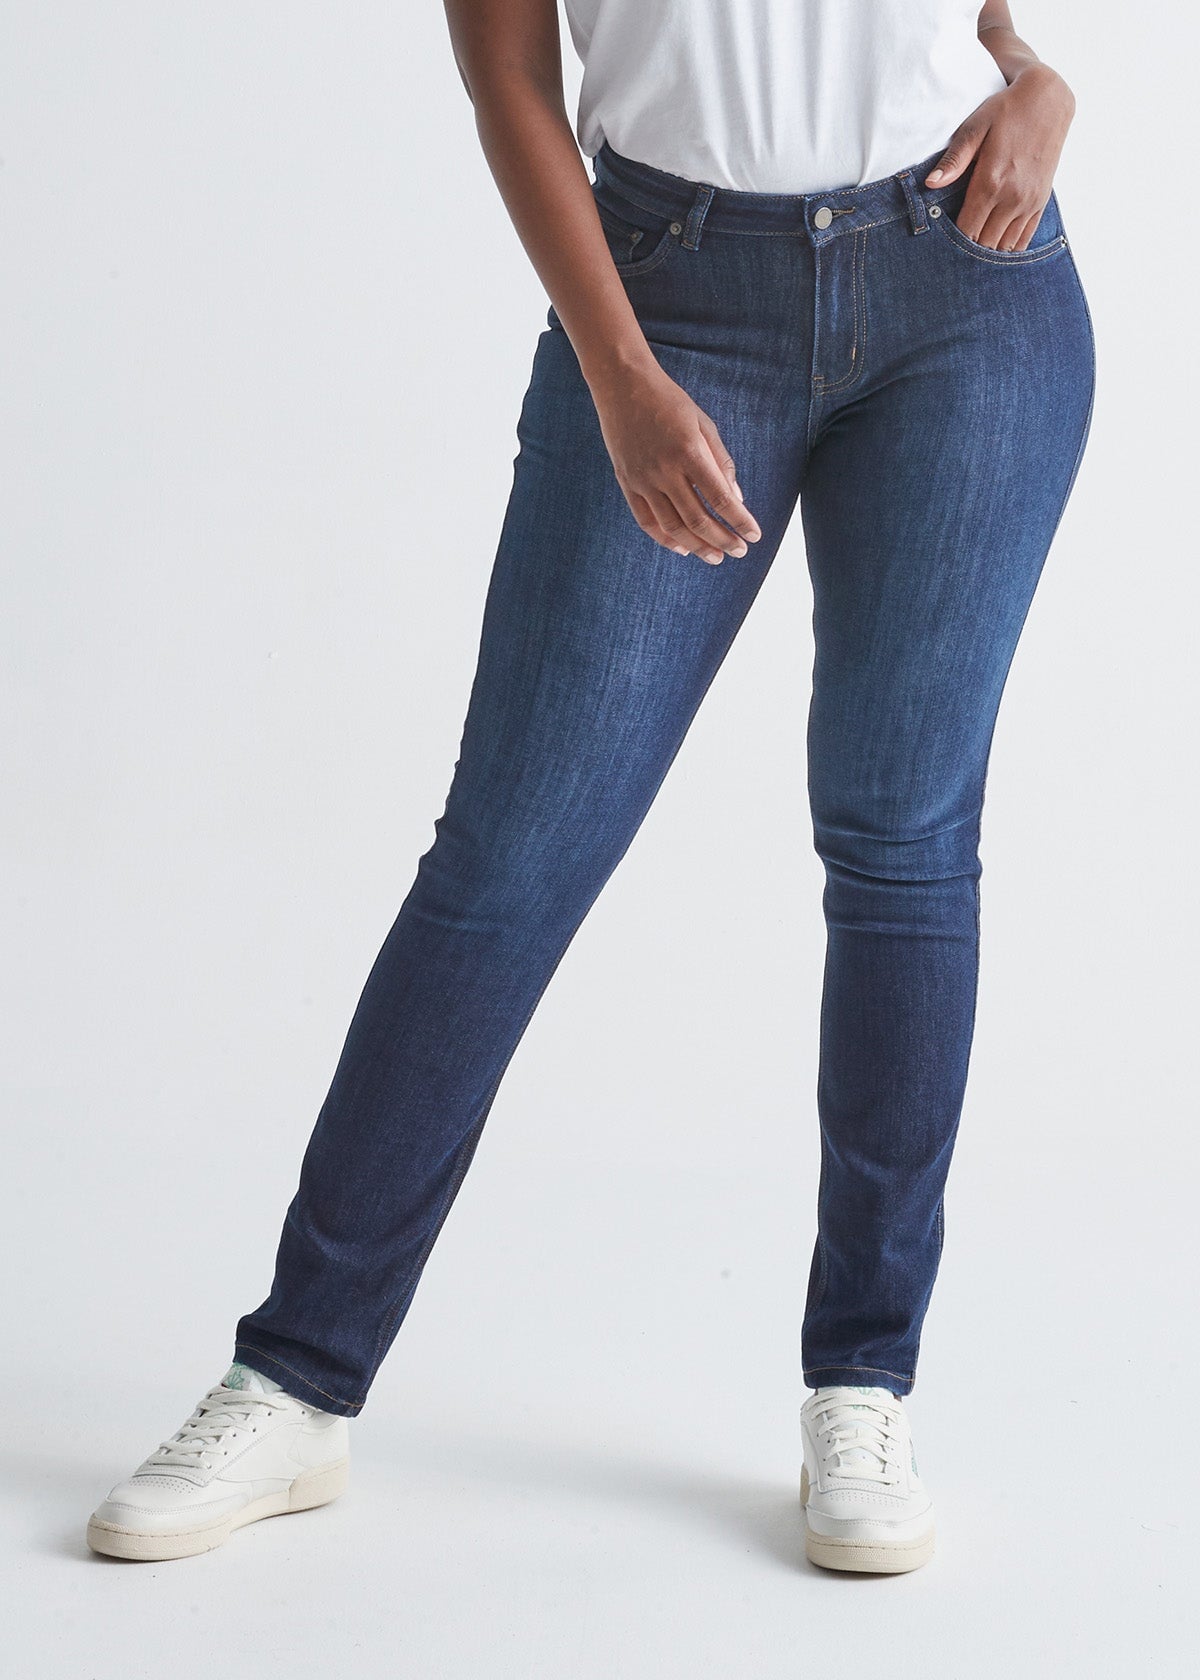 Women's Slim Straight dark blue stretch jeans front